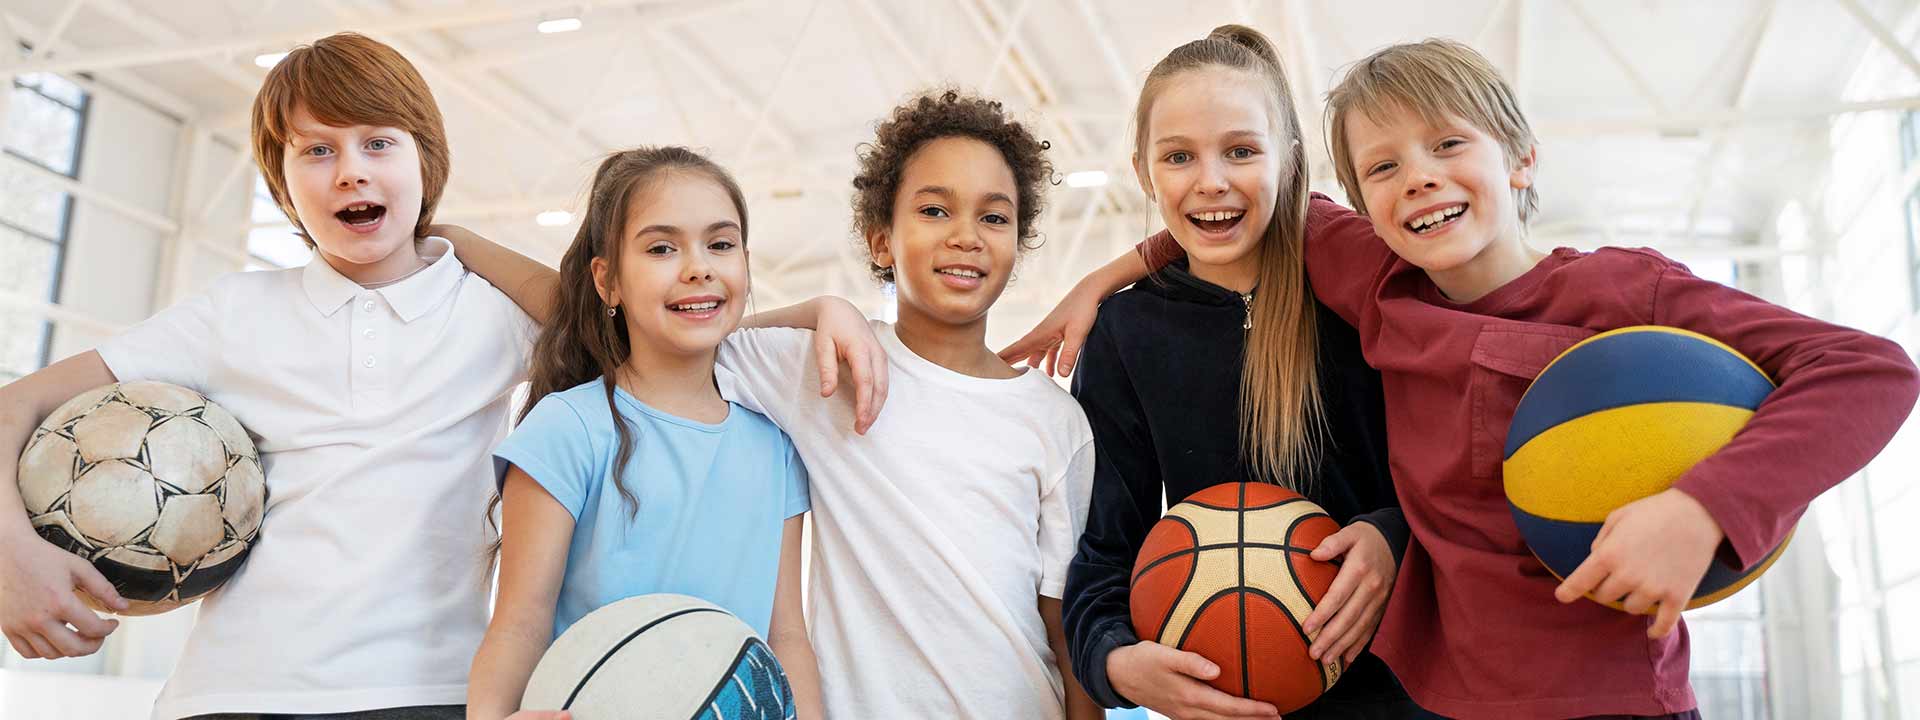 Çocuklarda Spor Ve Fiziksel Aktiviteler Eğitimi